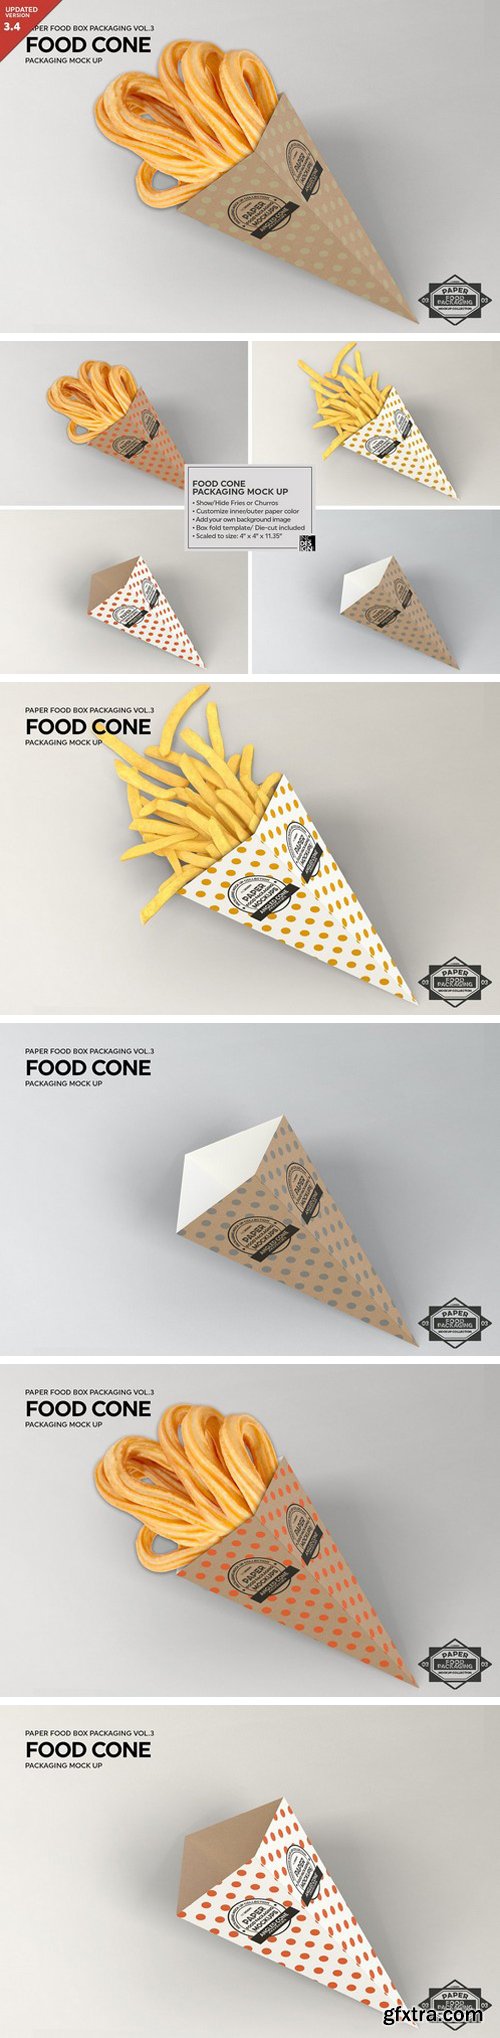 CM - Paper Food Cone Packaging Mockup 1211255